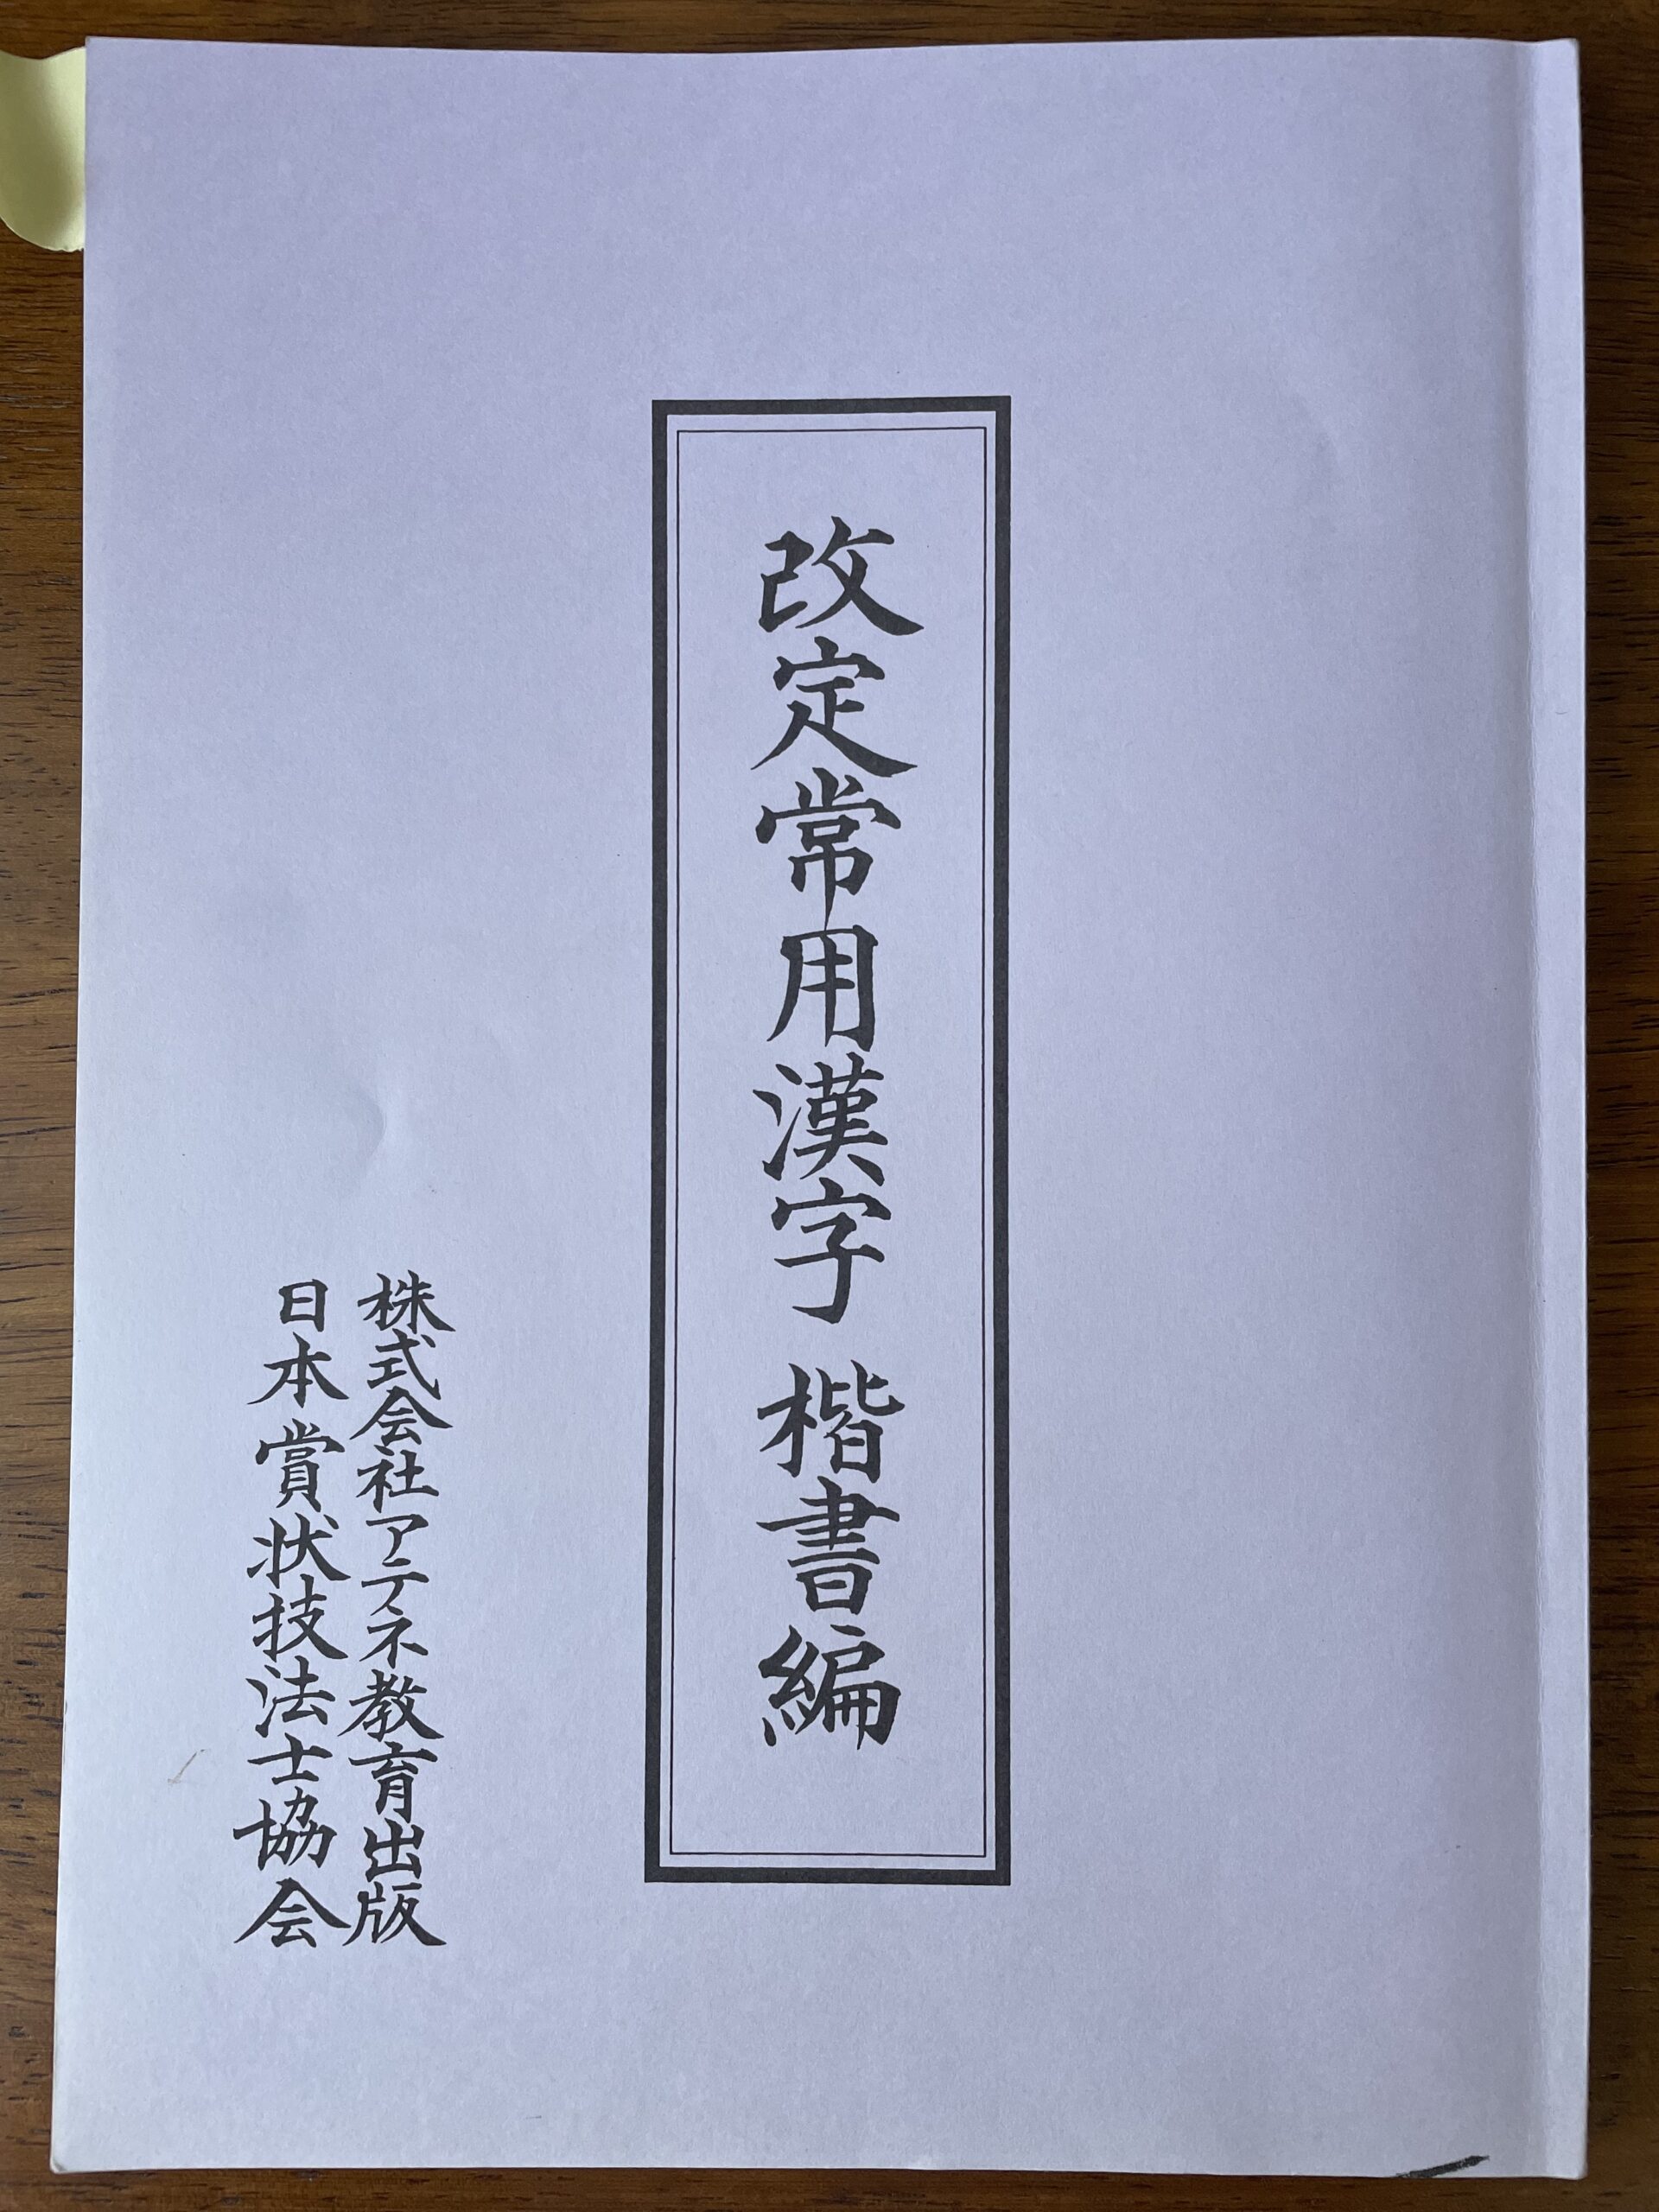 賞状技法士3級の通信講座「改定常用漢字楷書編」